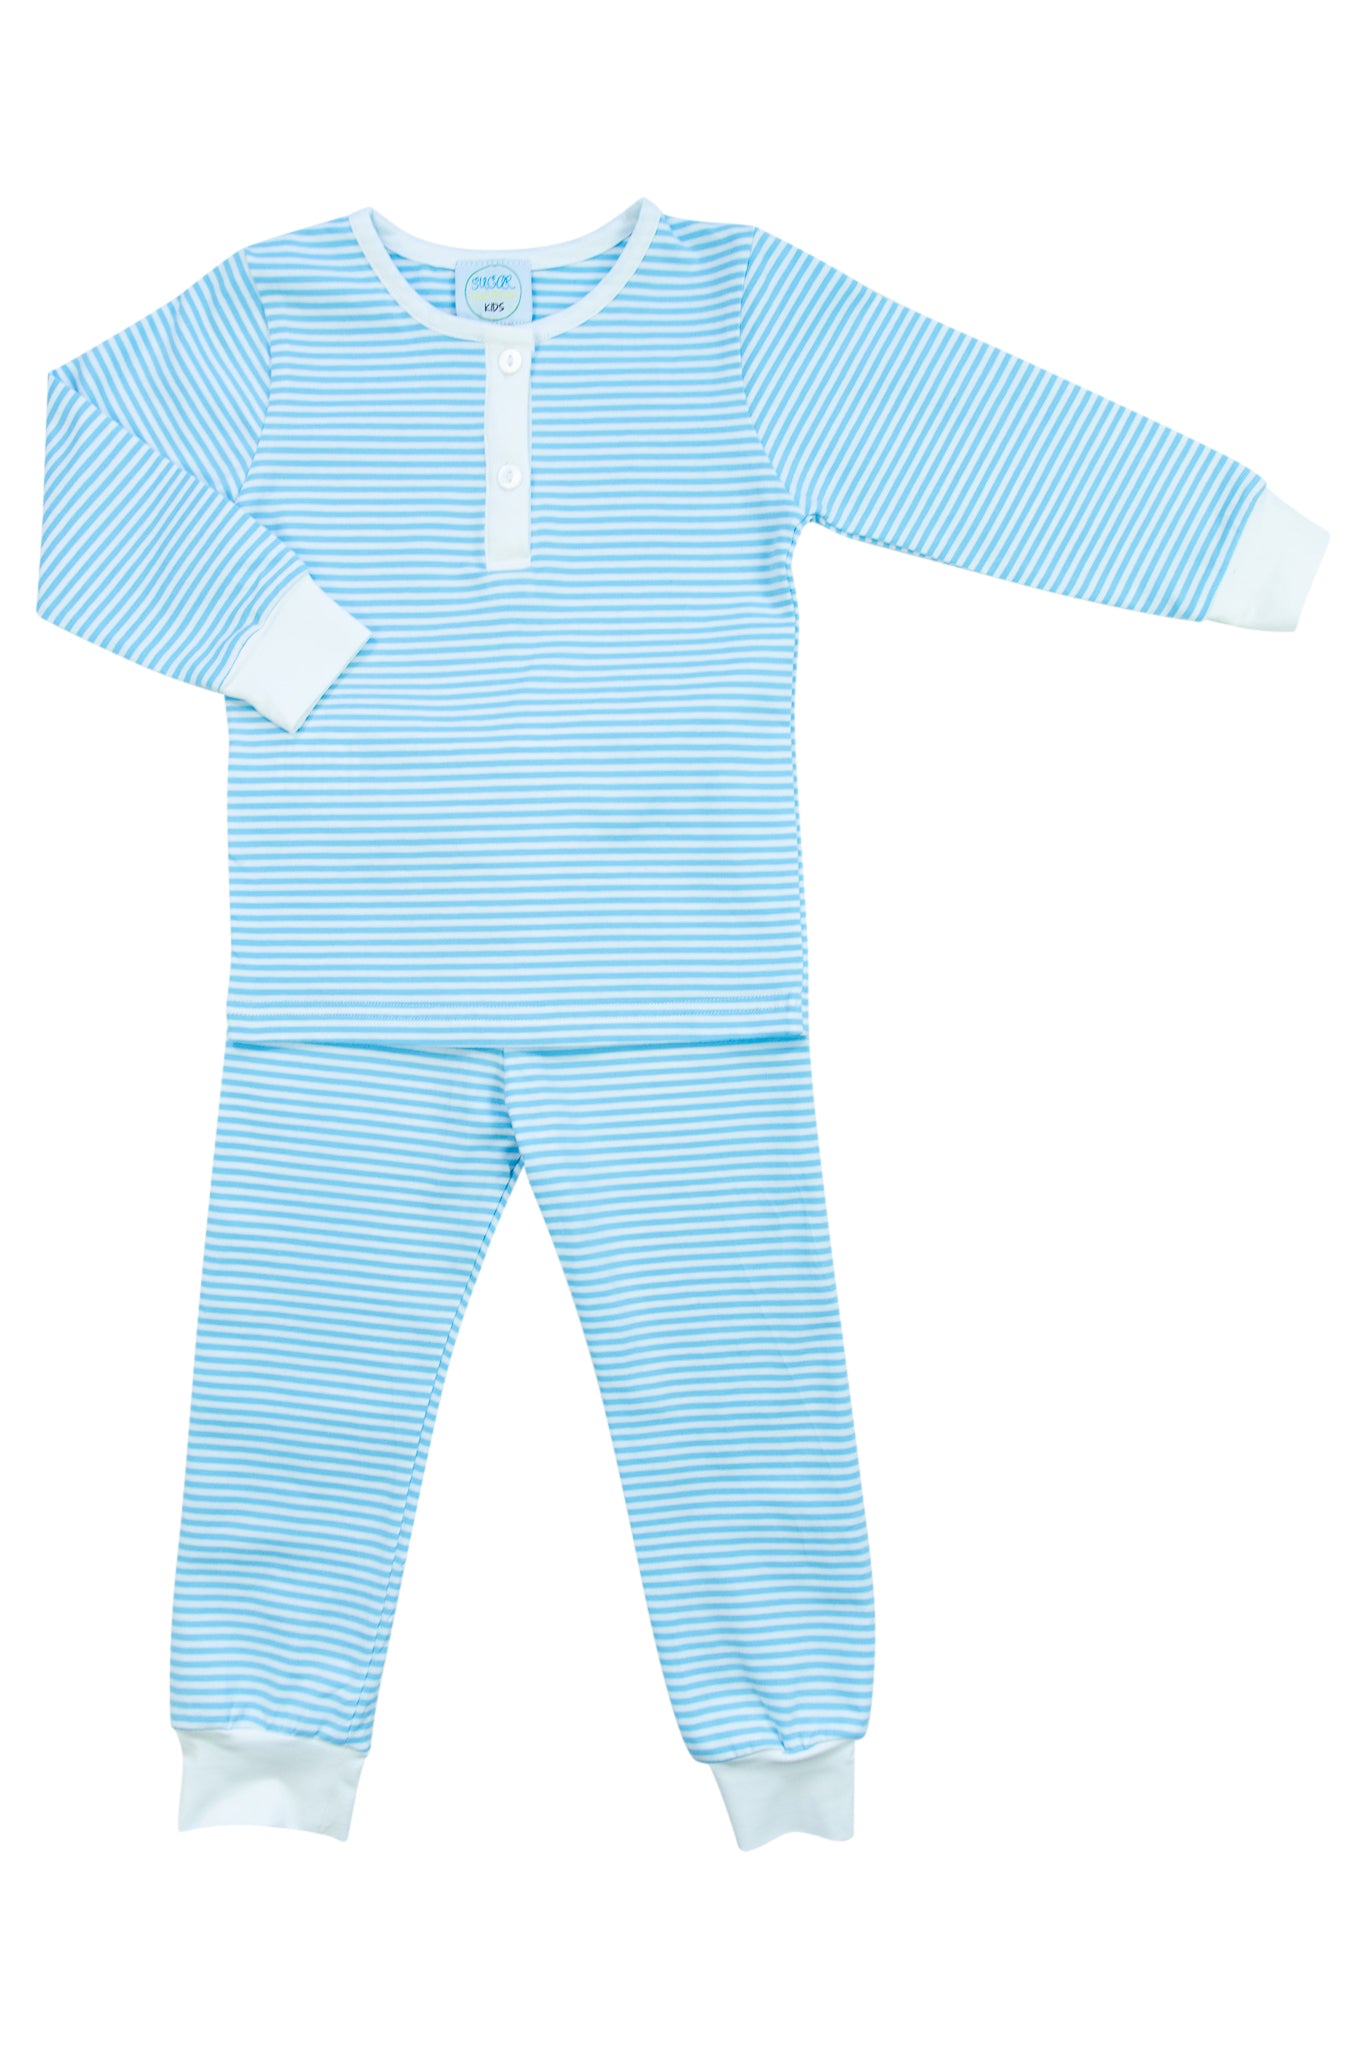 Boys Blue Stripe PJ Pants Set